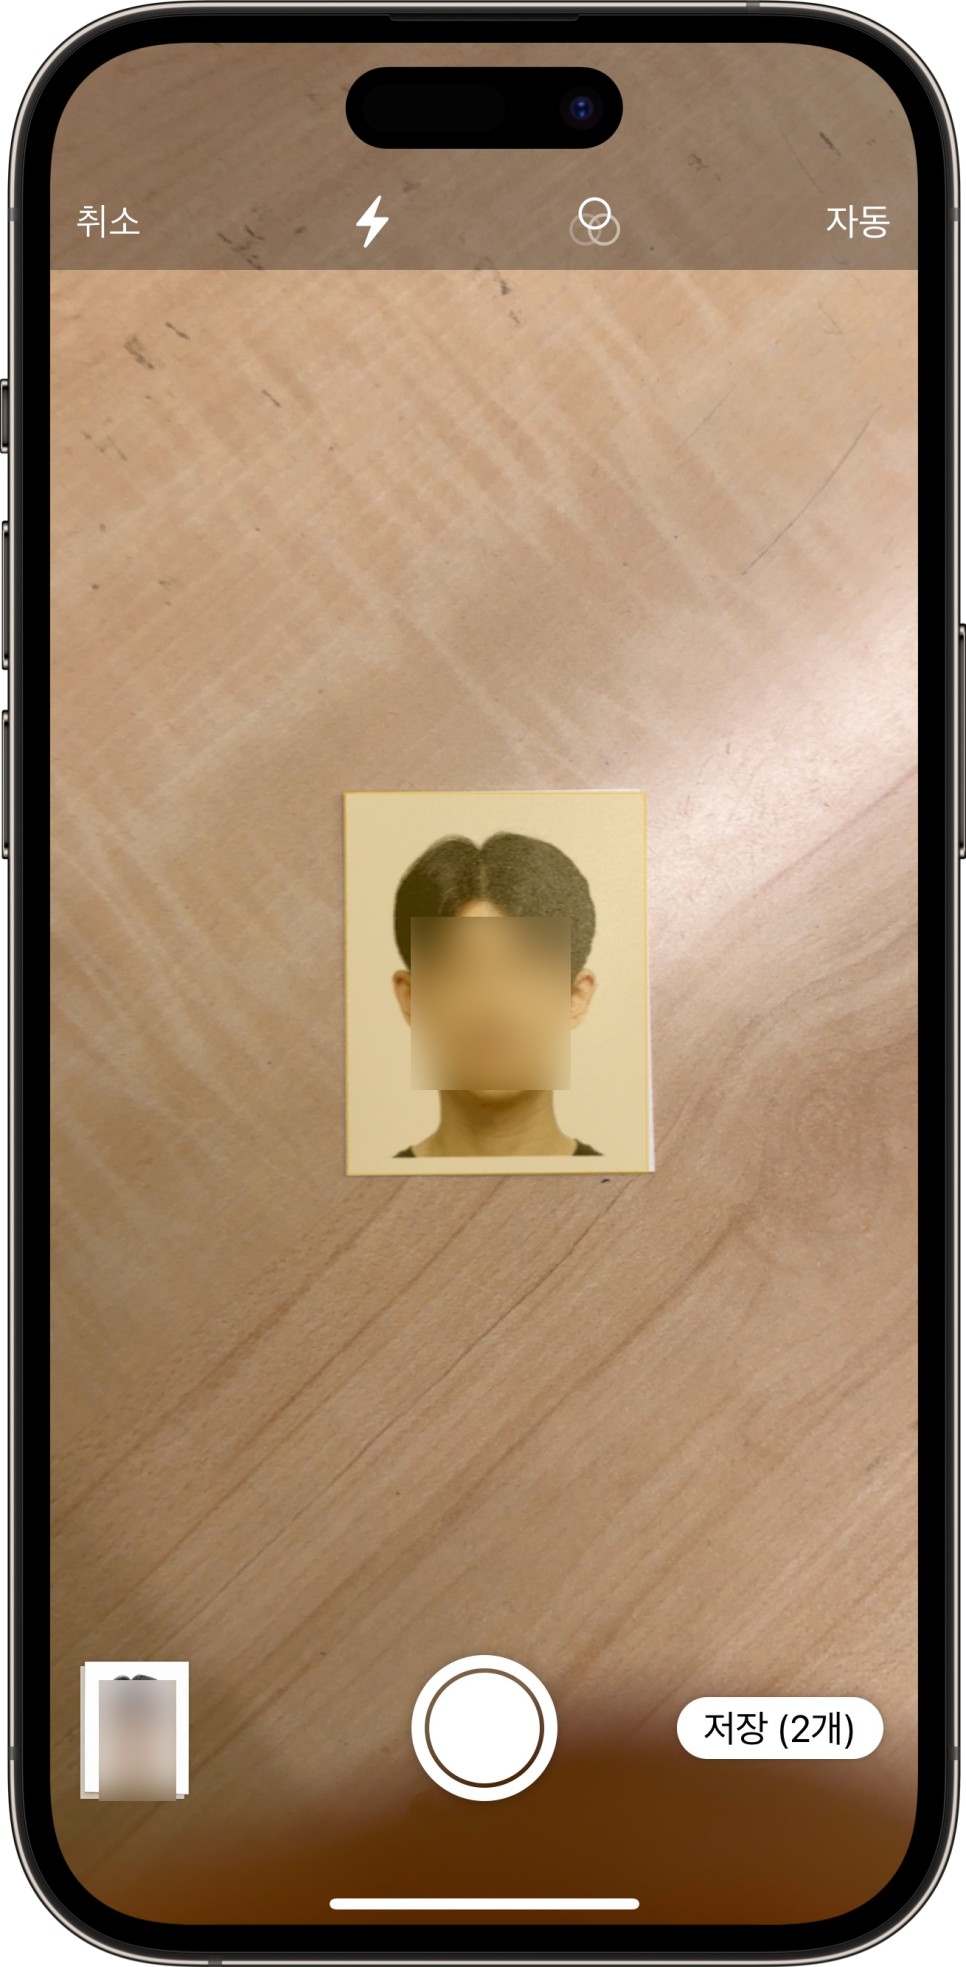 아이폰 증명 사진 스캔 방법 운전면허증 여권 목적으로 해결